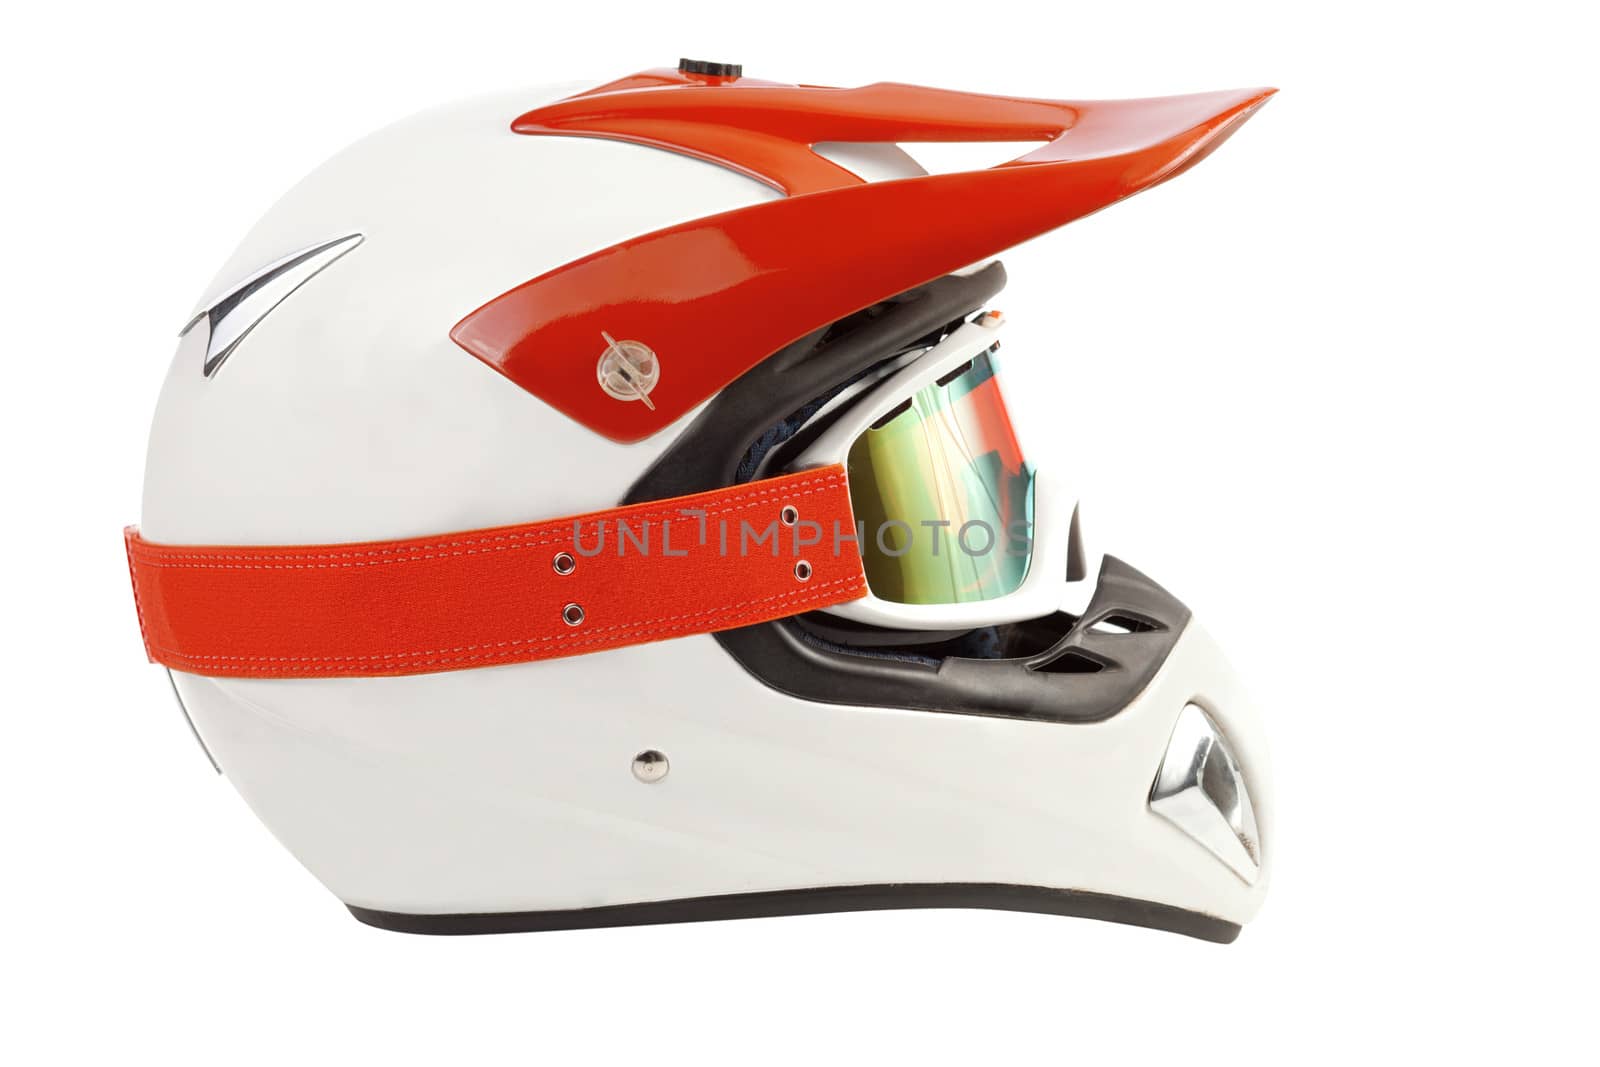 Orange enduro motocross bike helmet isolated on white